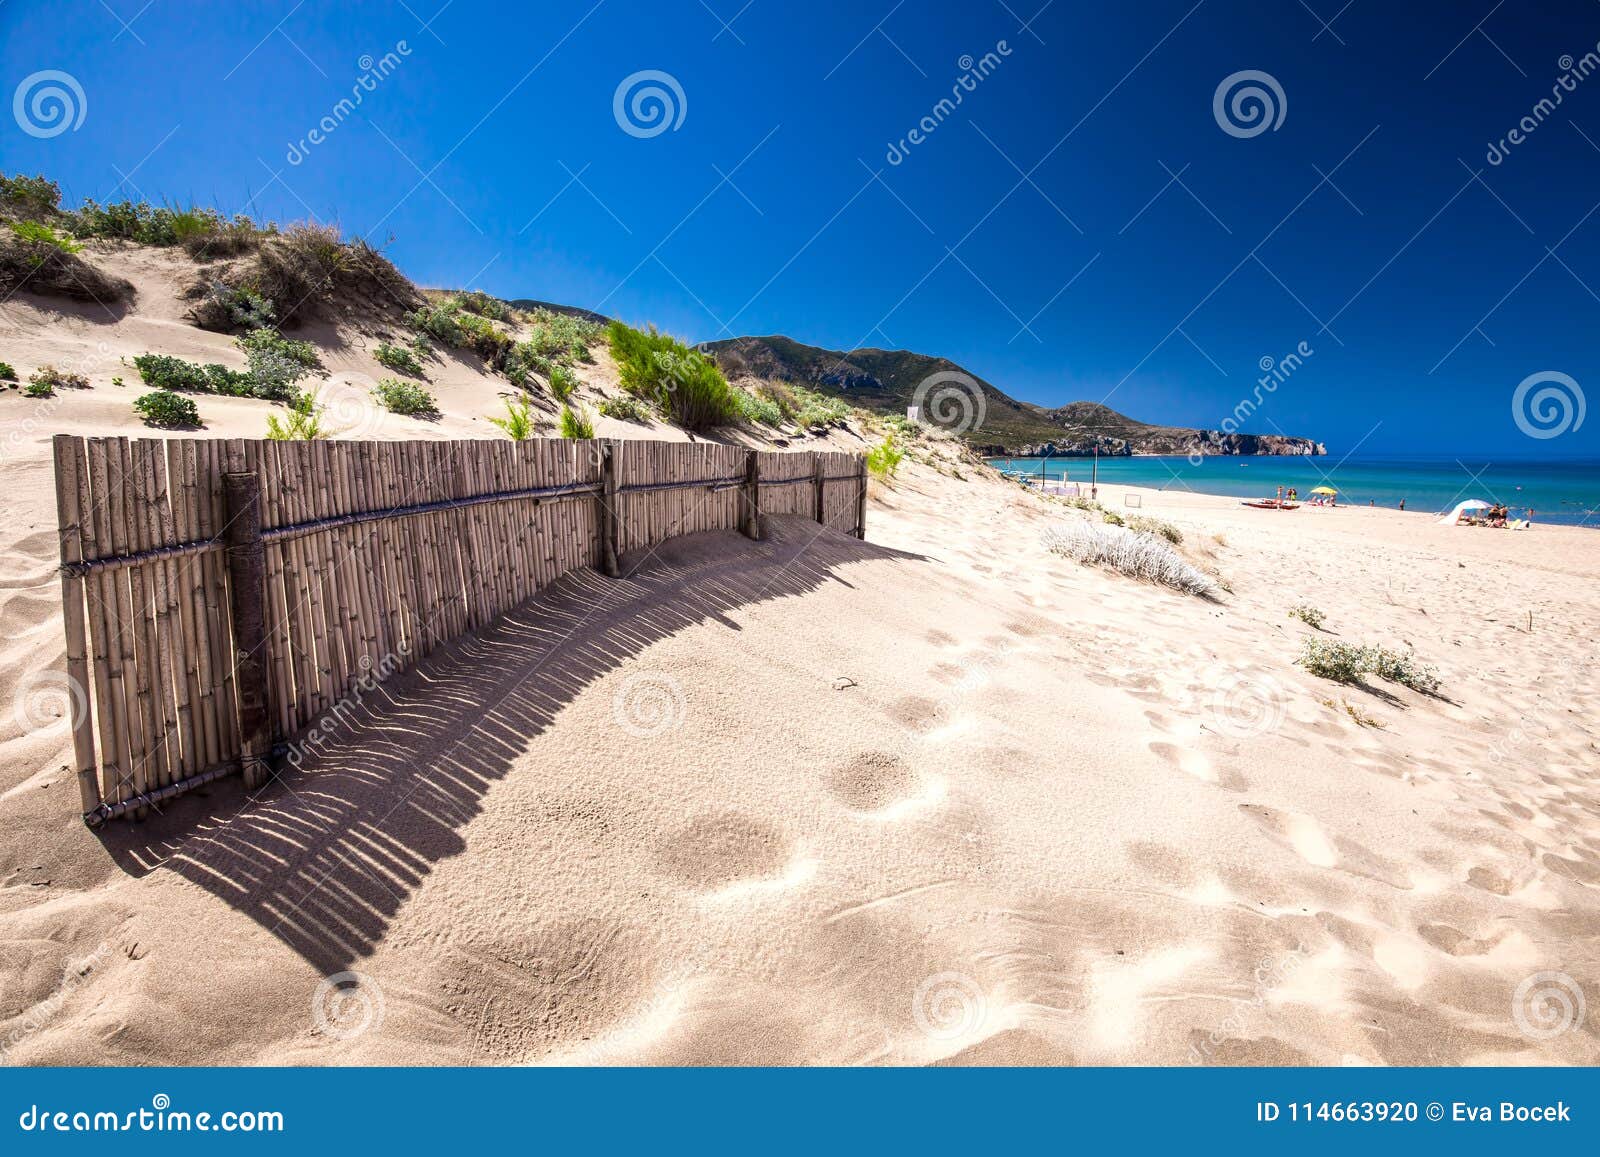 spiaggia di san nicolo and spiaggia di portixeddu beach in san nicolo town, costa verde, sardinia, italy